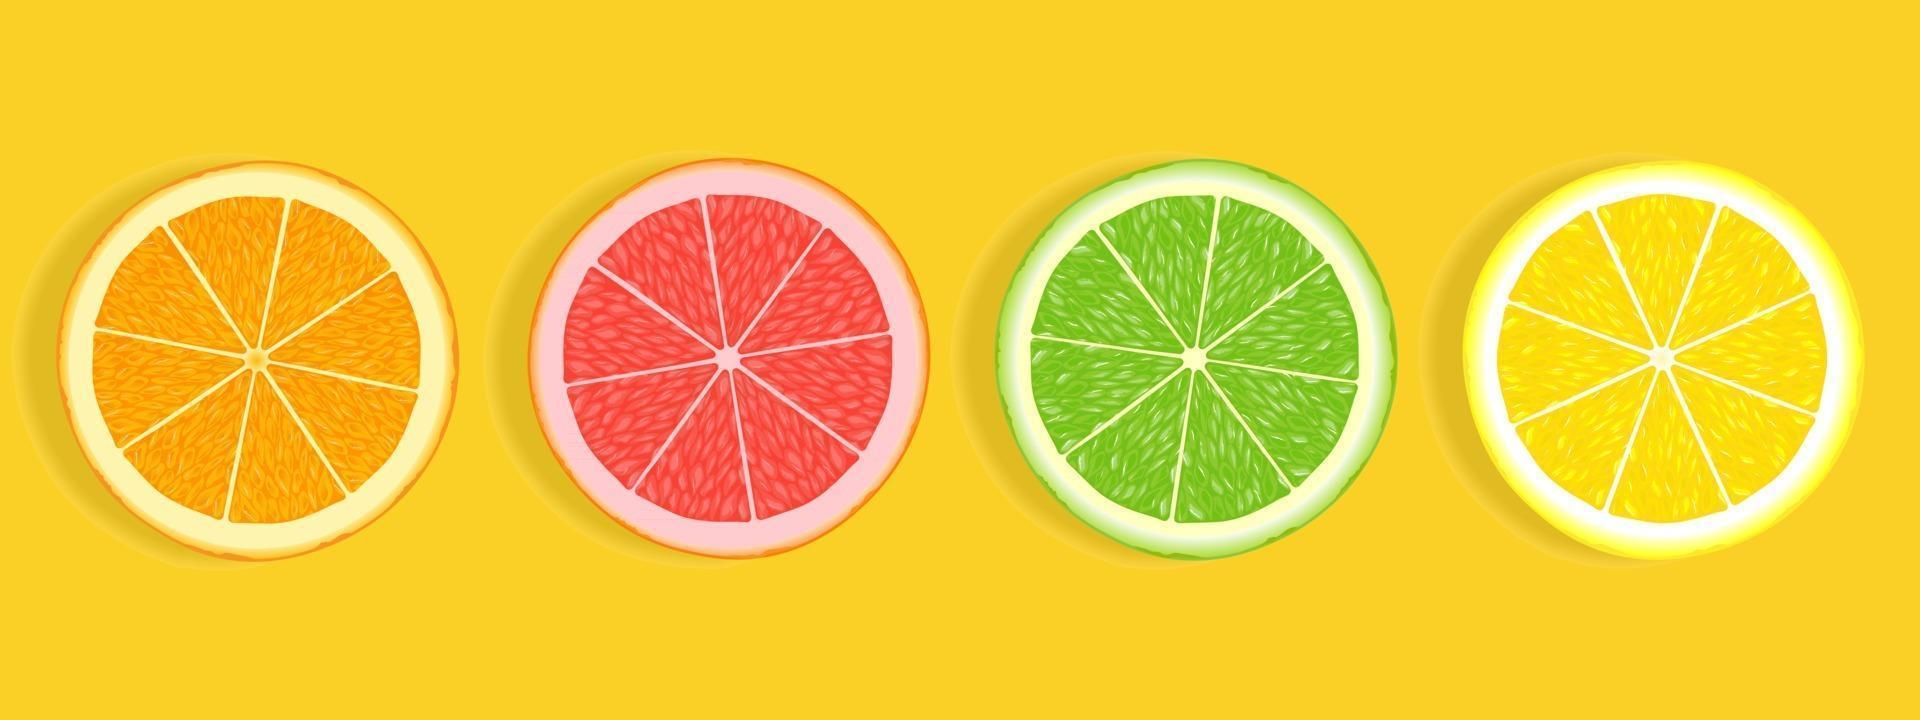 citrusfruktskivor av orange grapefruktkalk och citron isolerad på vit bakgrund vektor